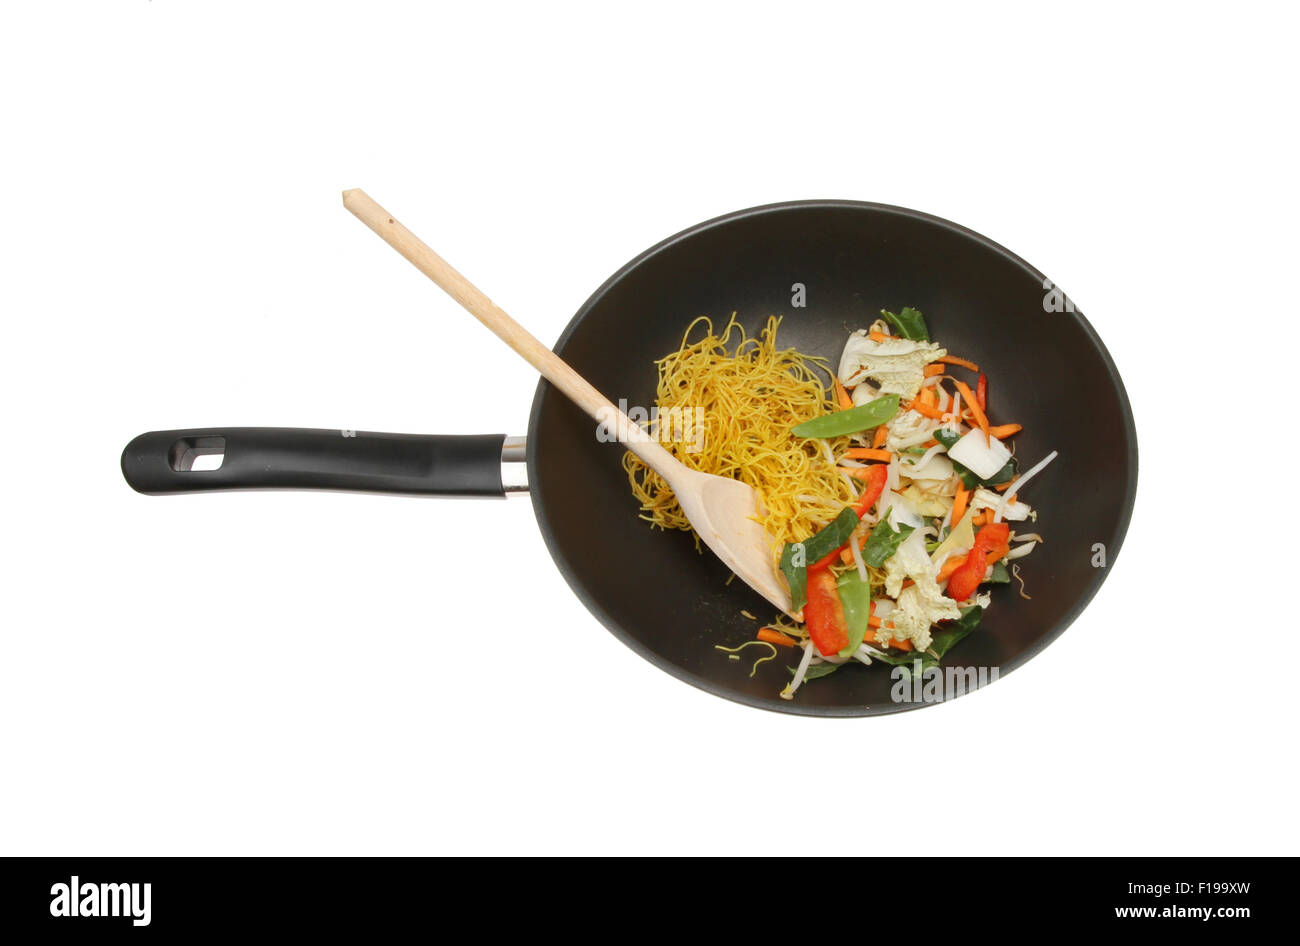 Ingrédients sautés, légumes et nouilles dans un wok isolés contre white Banque D'Images